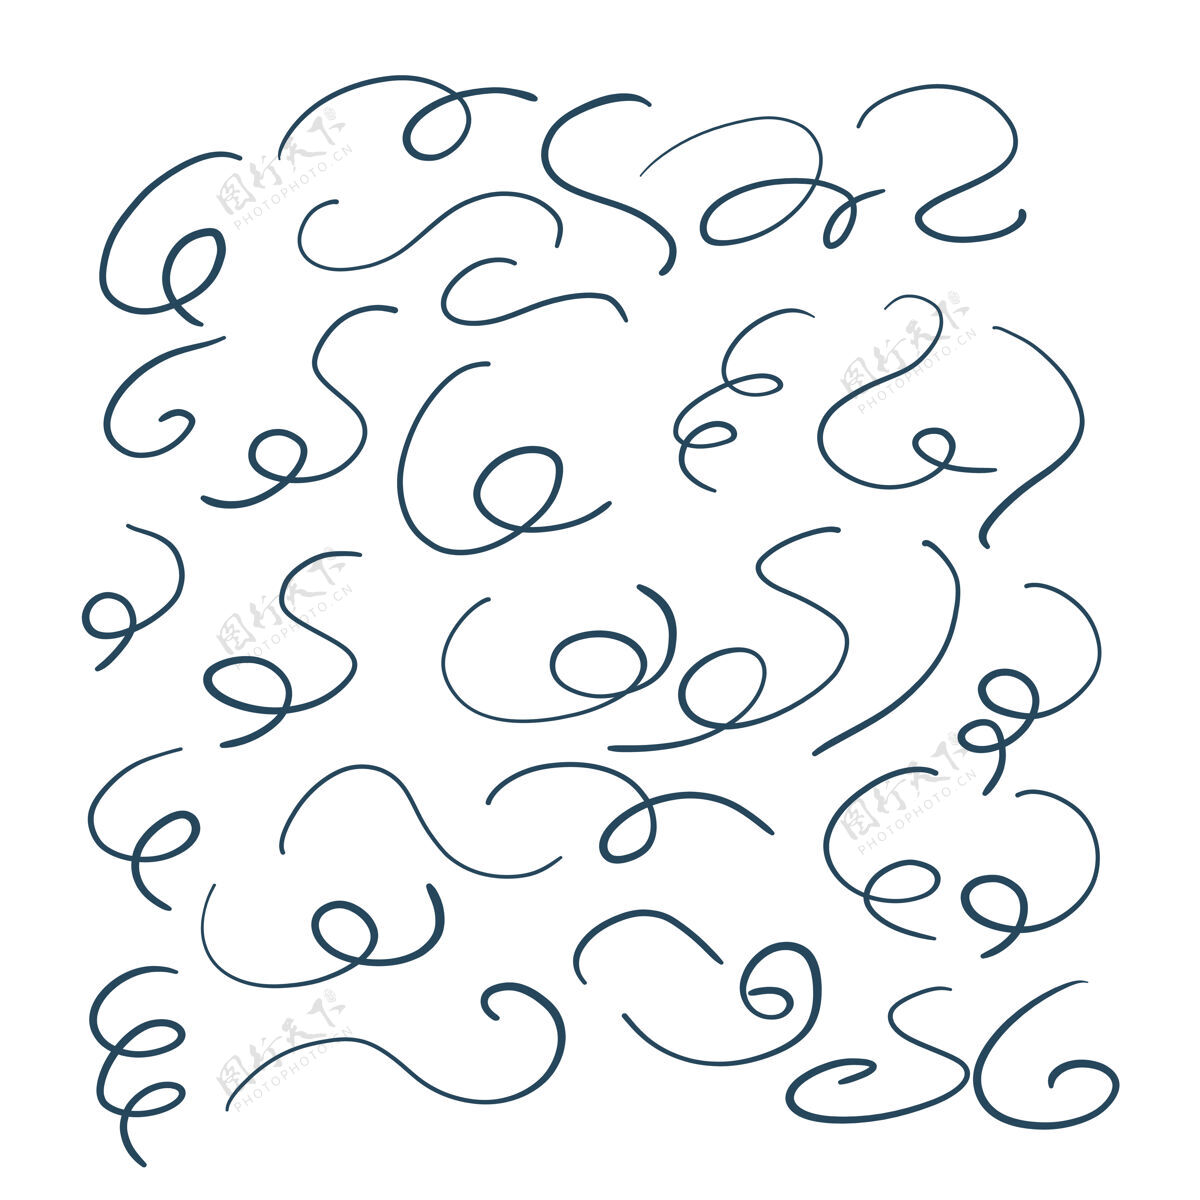 形状手绘漩涡形状大集钢笔抽象纹理